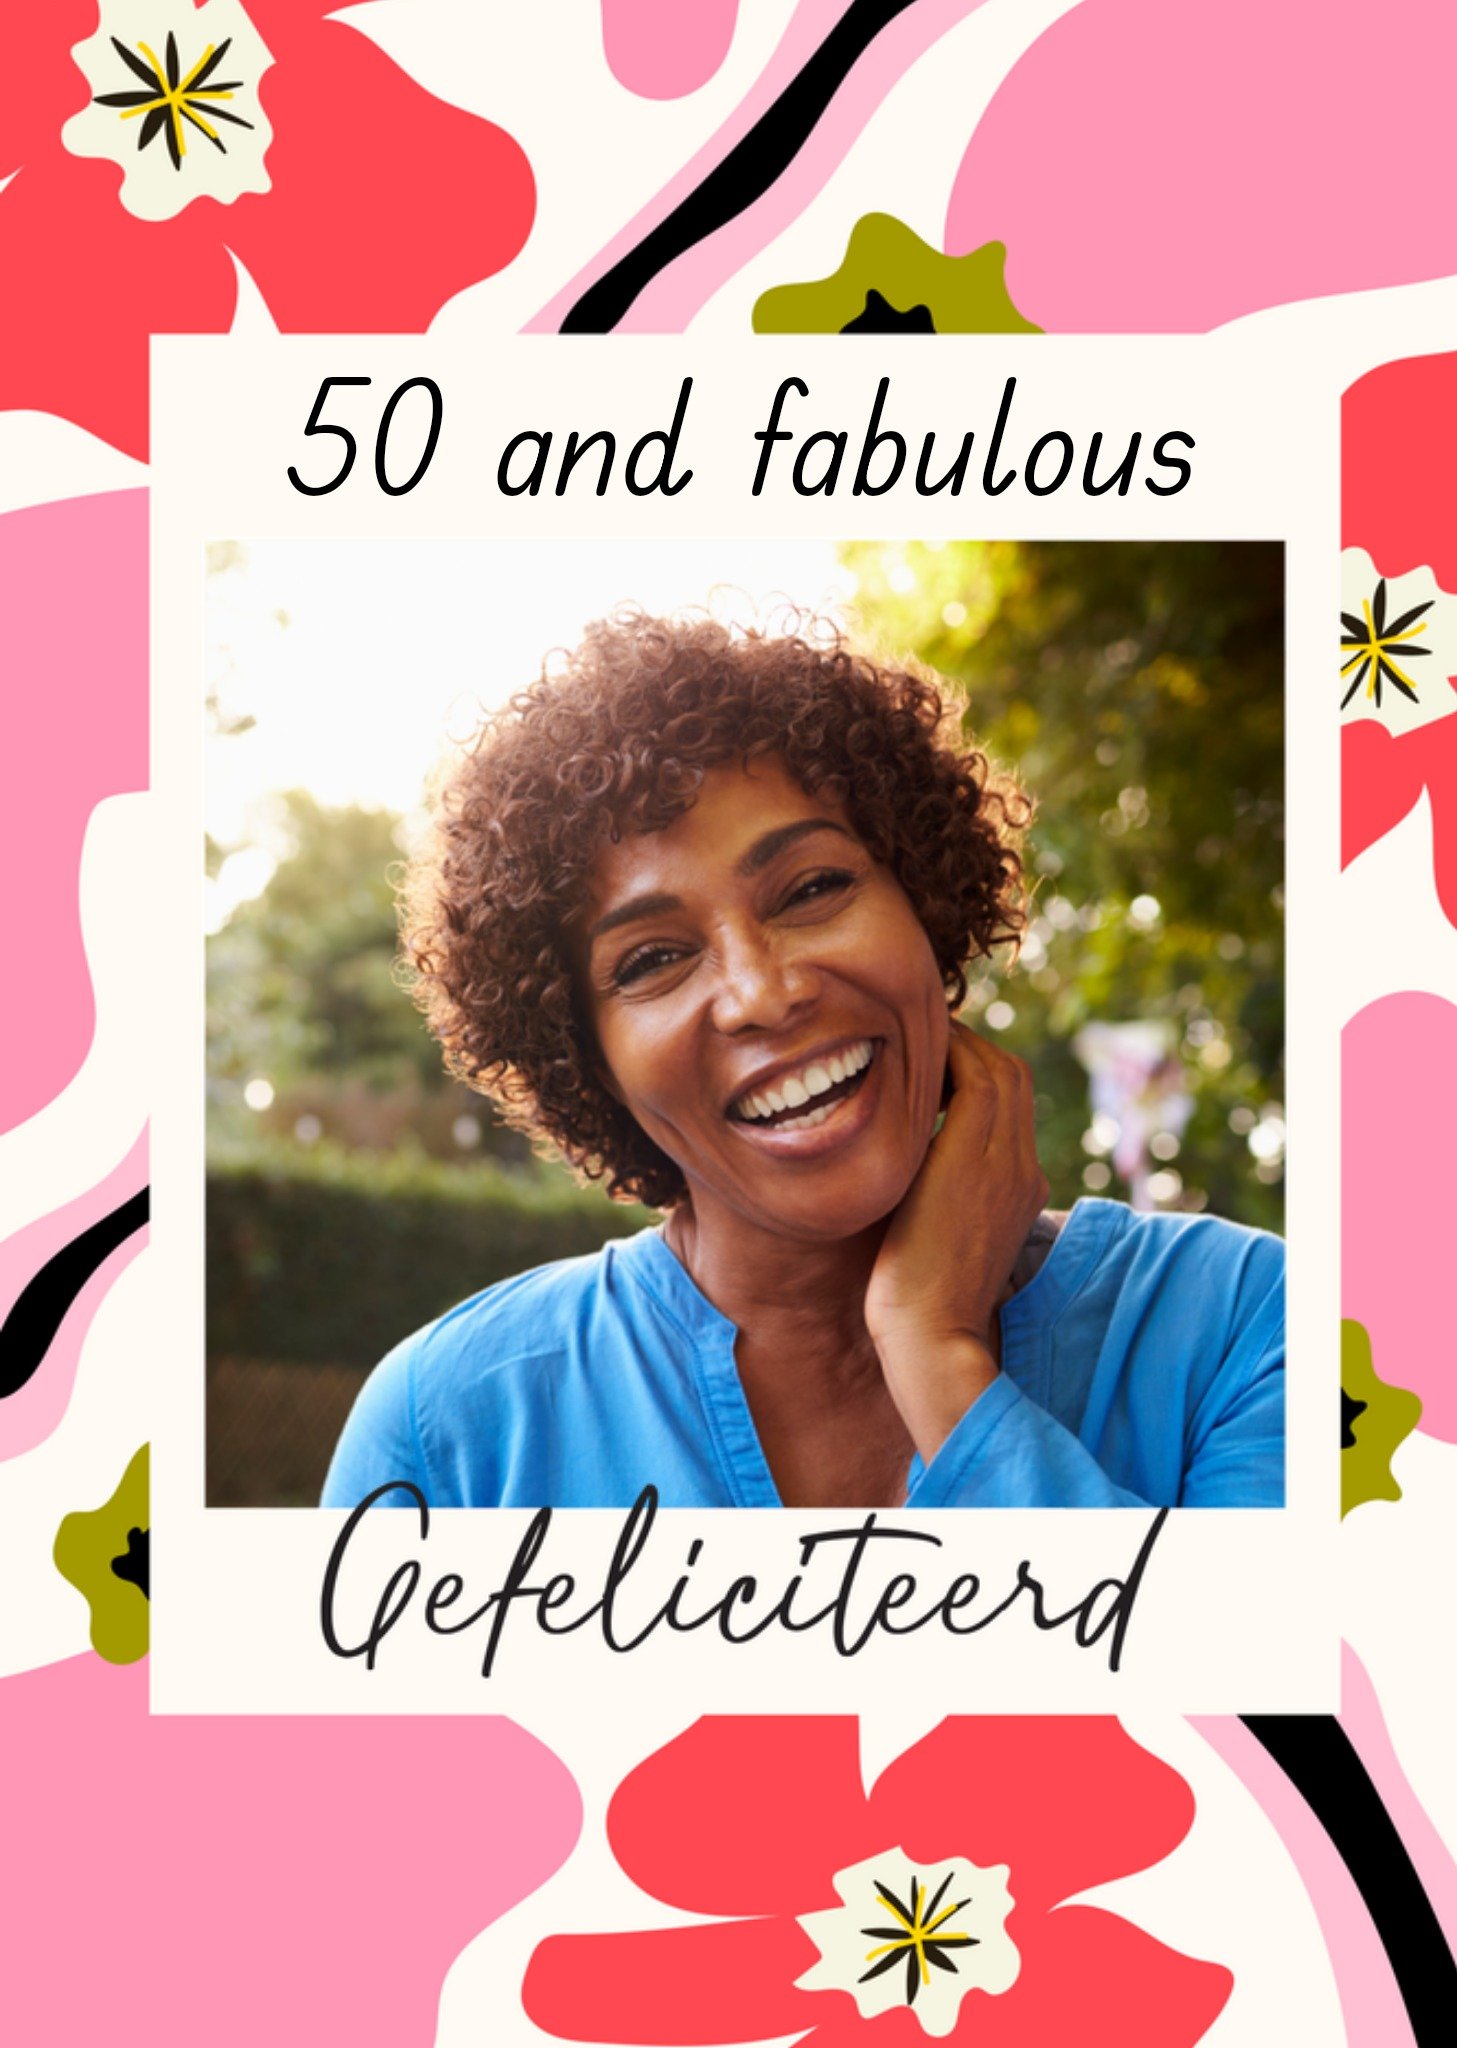 Verjaardagskaart - 50 and fabulous - Gefeliciteerd - Fotokaart - Aanpasbare tekst